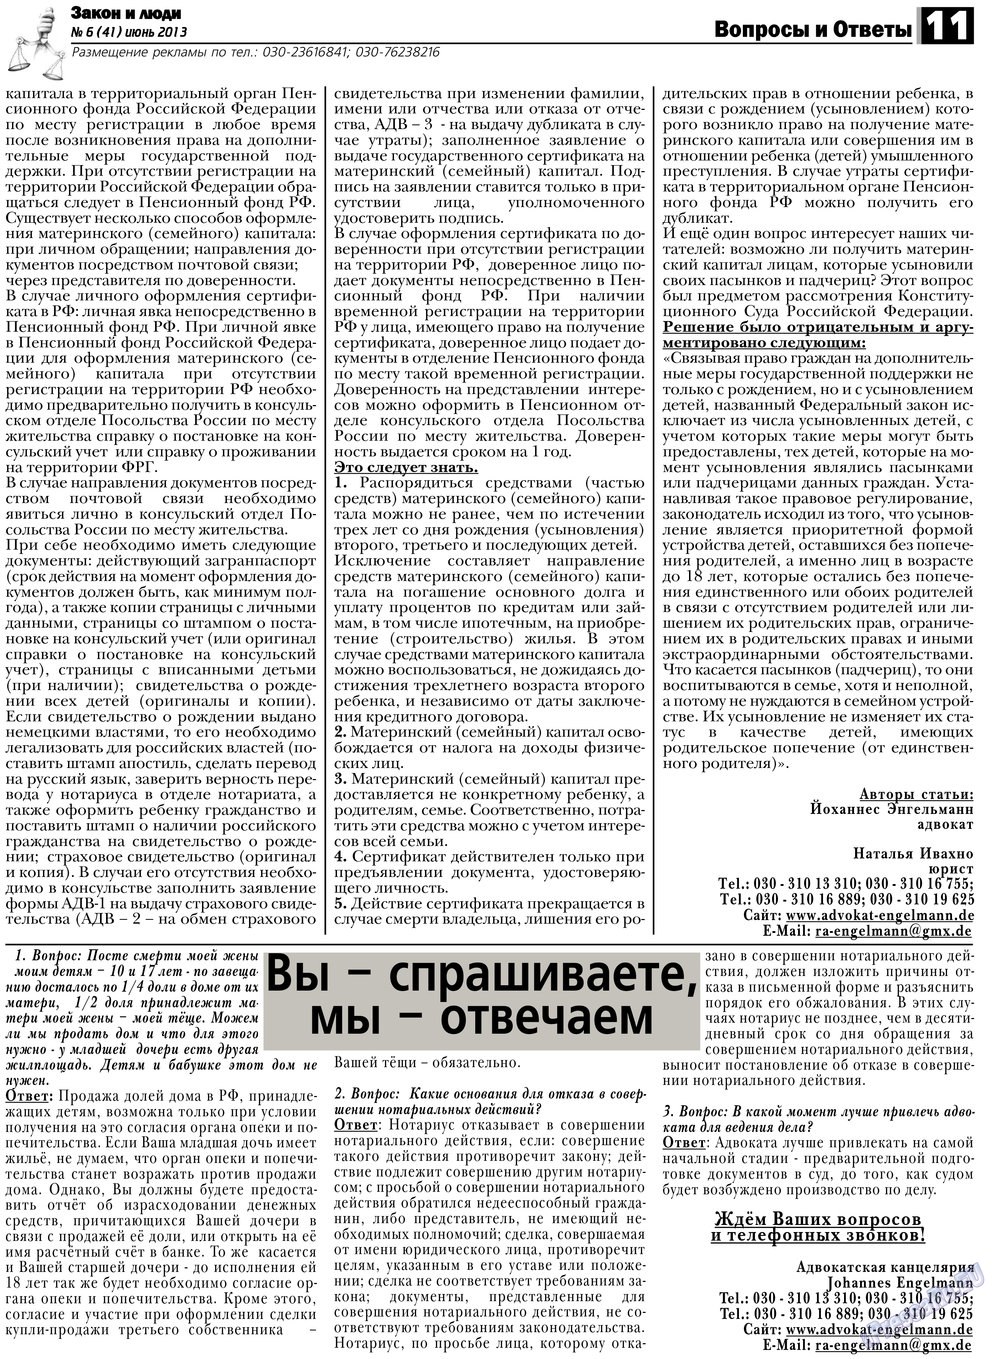 Закон и люди, газета. 2013 №6 стр.11